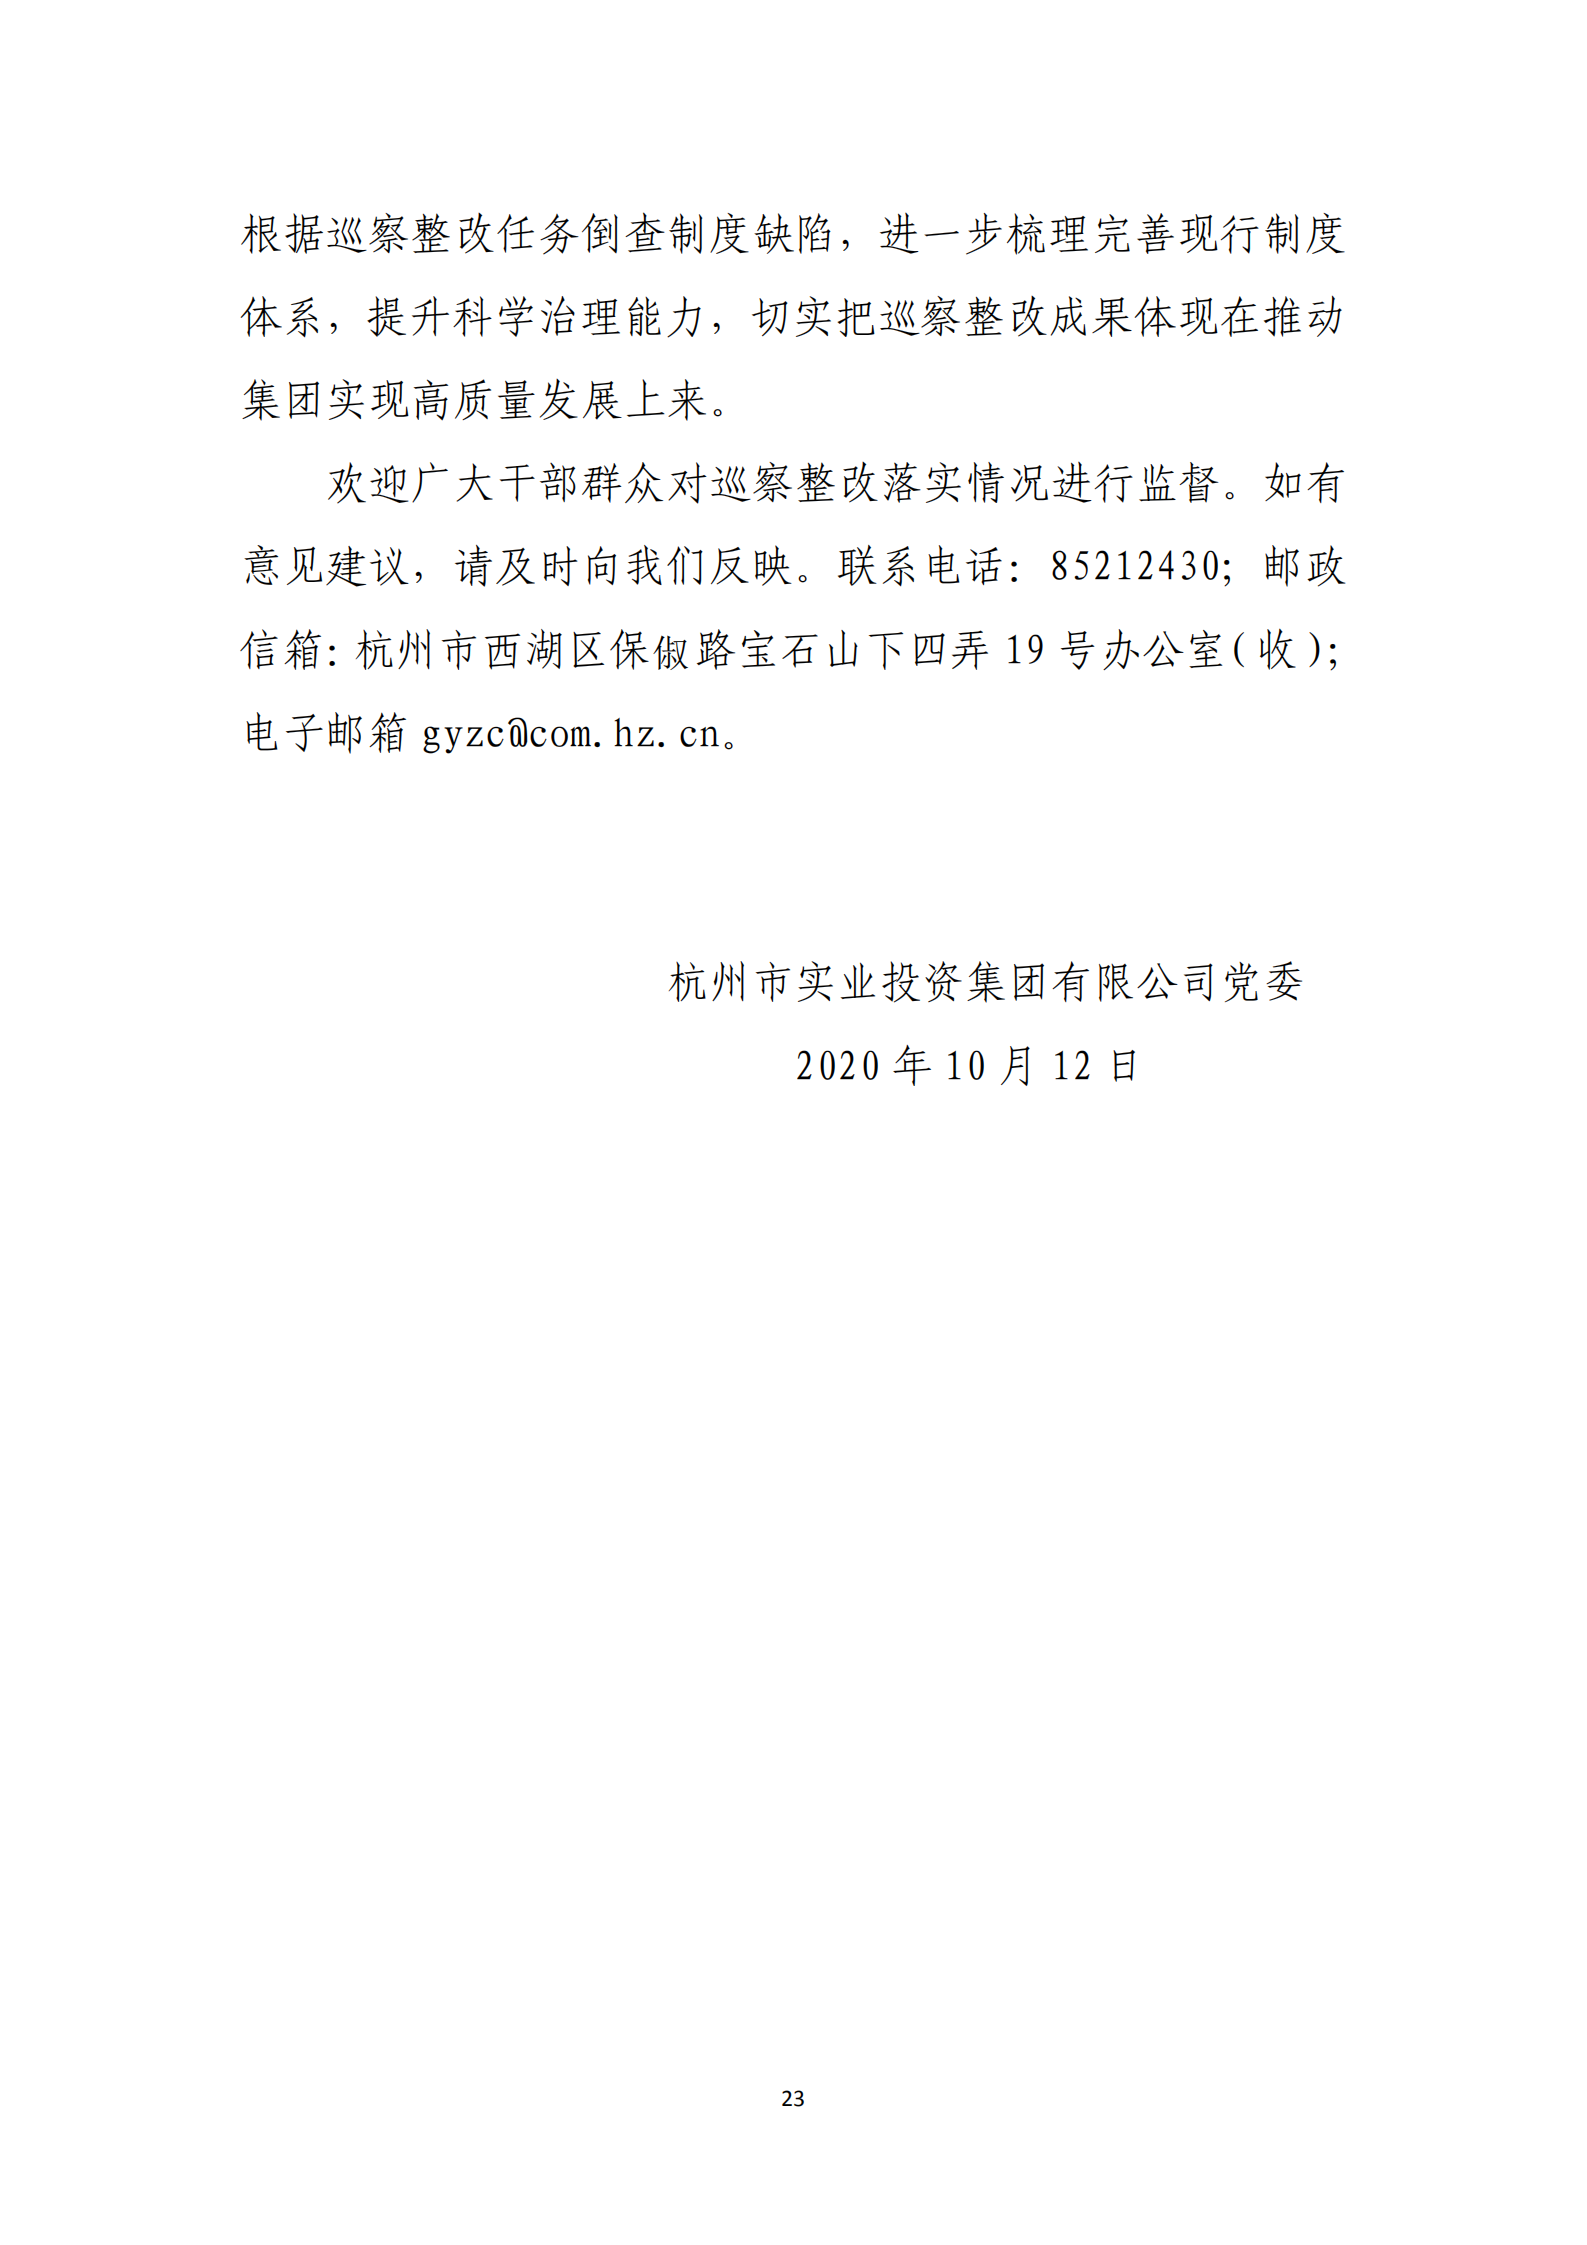 【体育365官方网站】中国有限公司党委关于巡察整改情况的通报_22.png